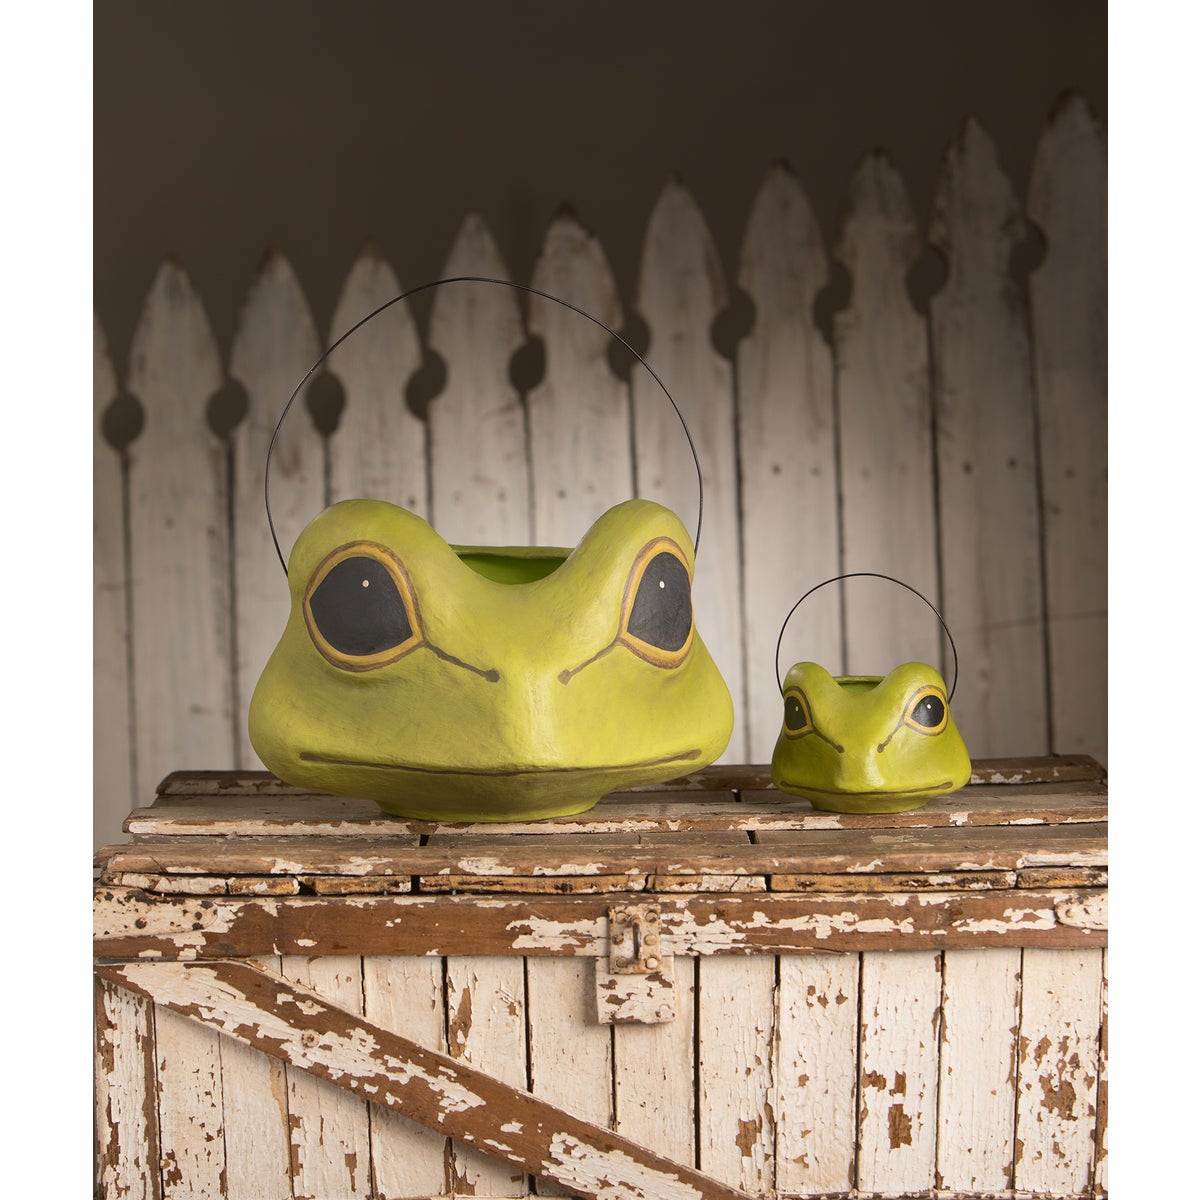 Frog Buckets, Paper mache Halloween decorations